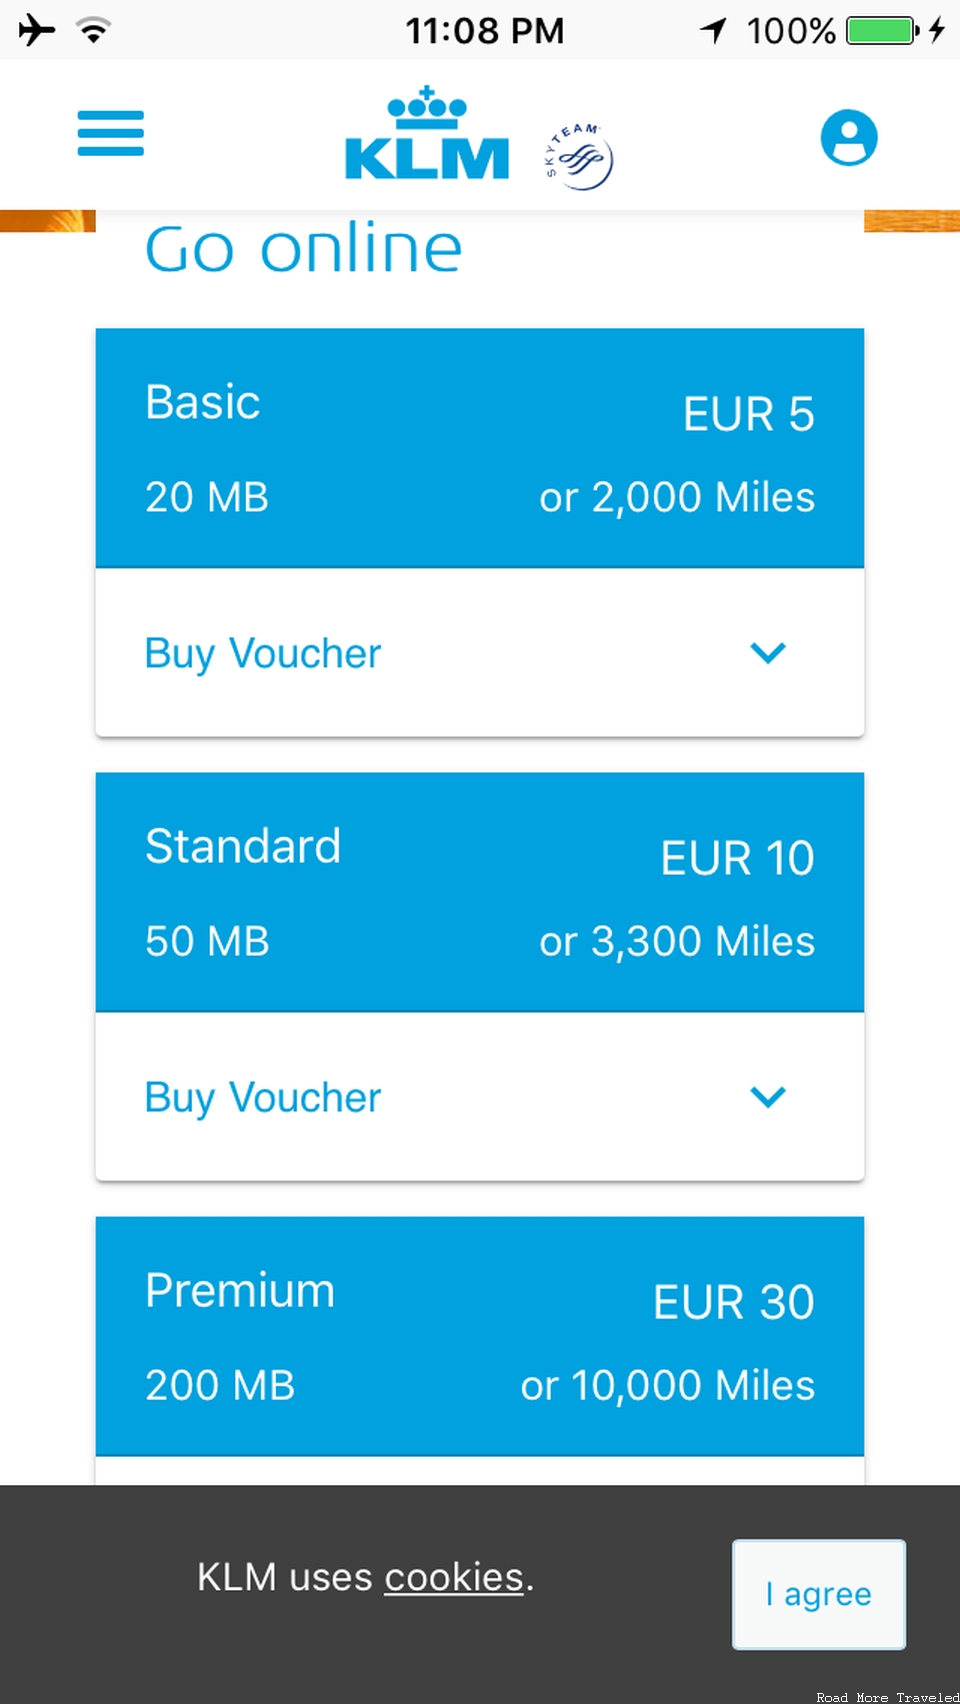 KLM 787-9 Economy Comfort - WiFi prices